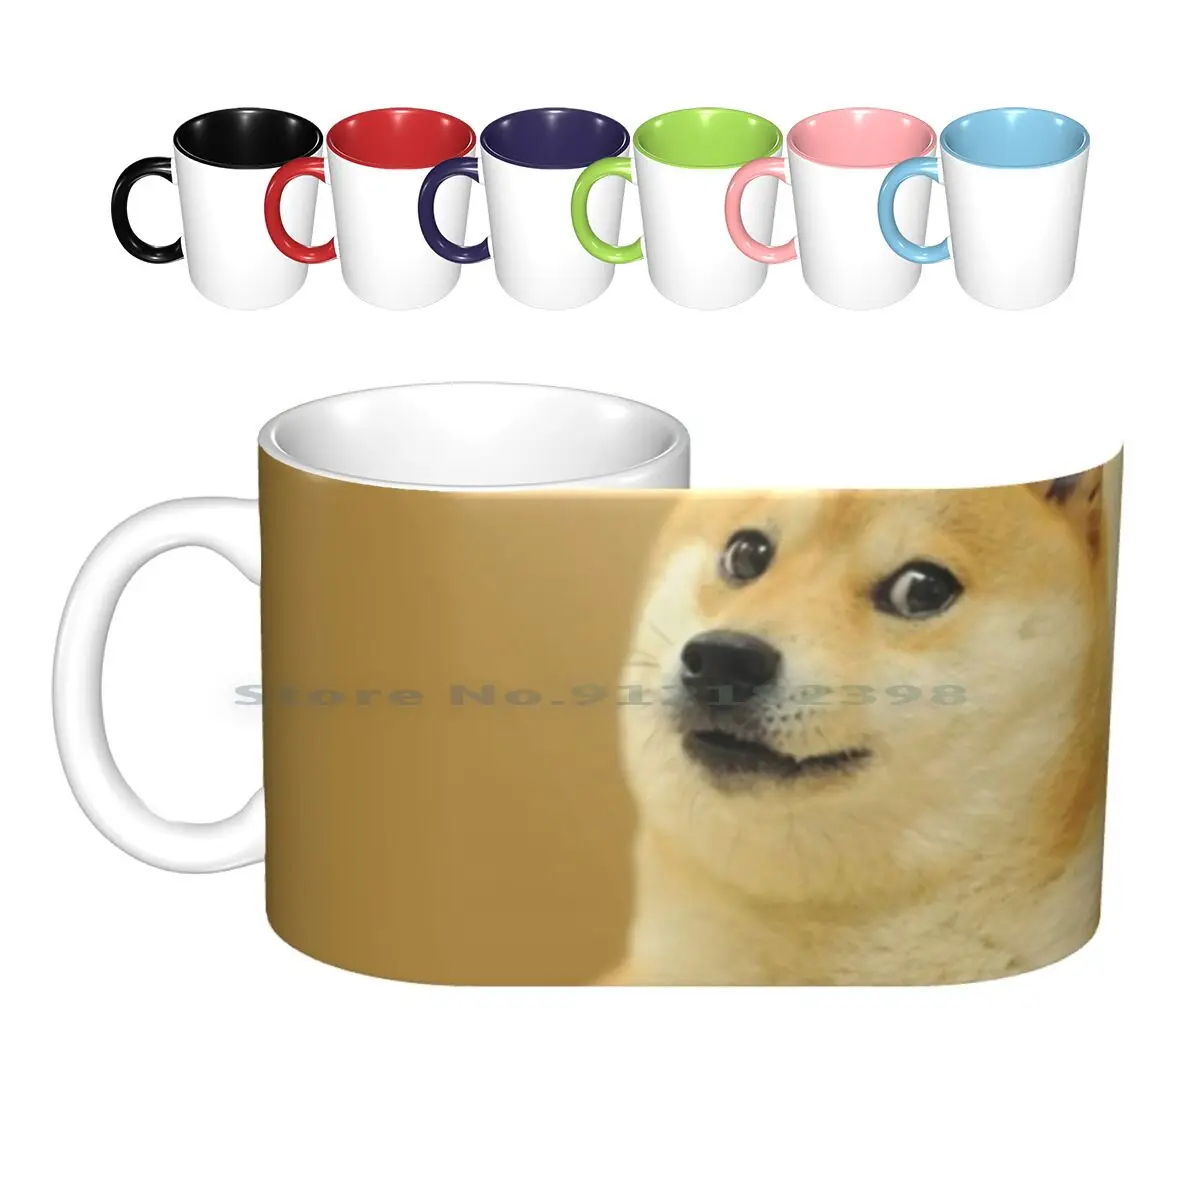 

Керамические кружки Doge Wow, кофейные чашки, Кружка для молока и чая, кружка Doge Wow Meme, новинка, очень лающая собака, крутая Yolo, детский смешной см...